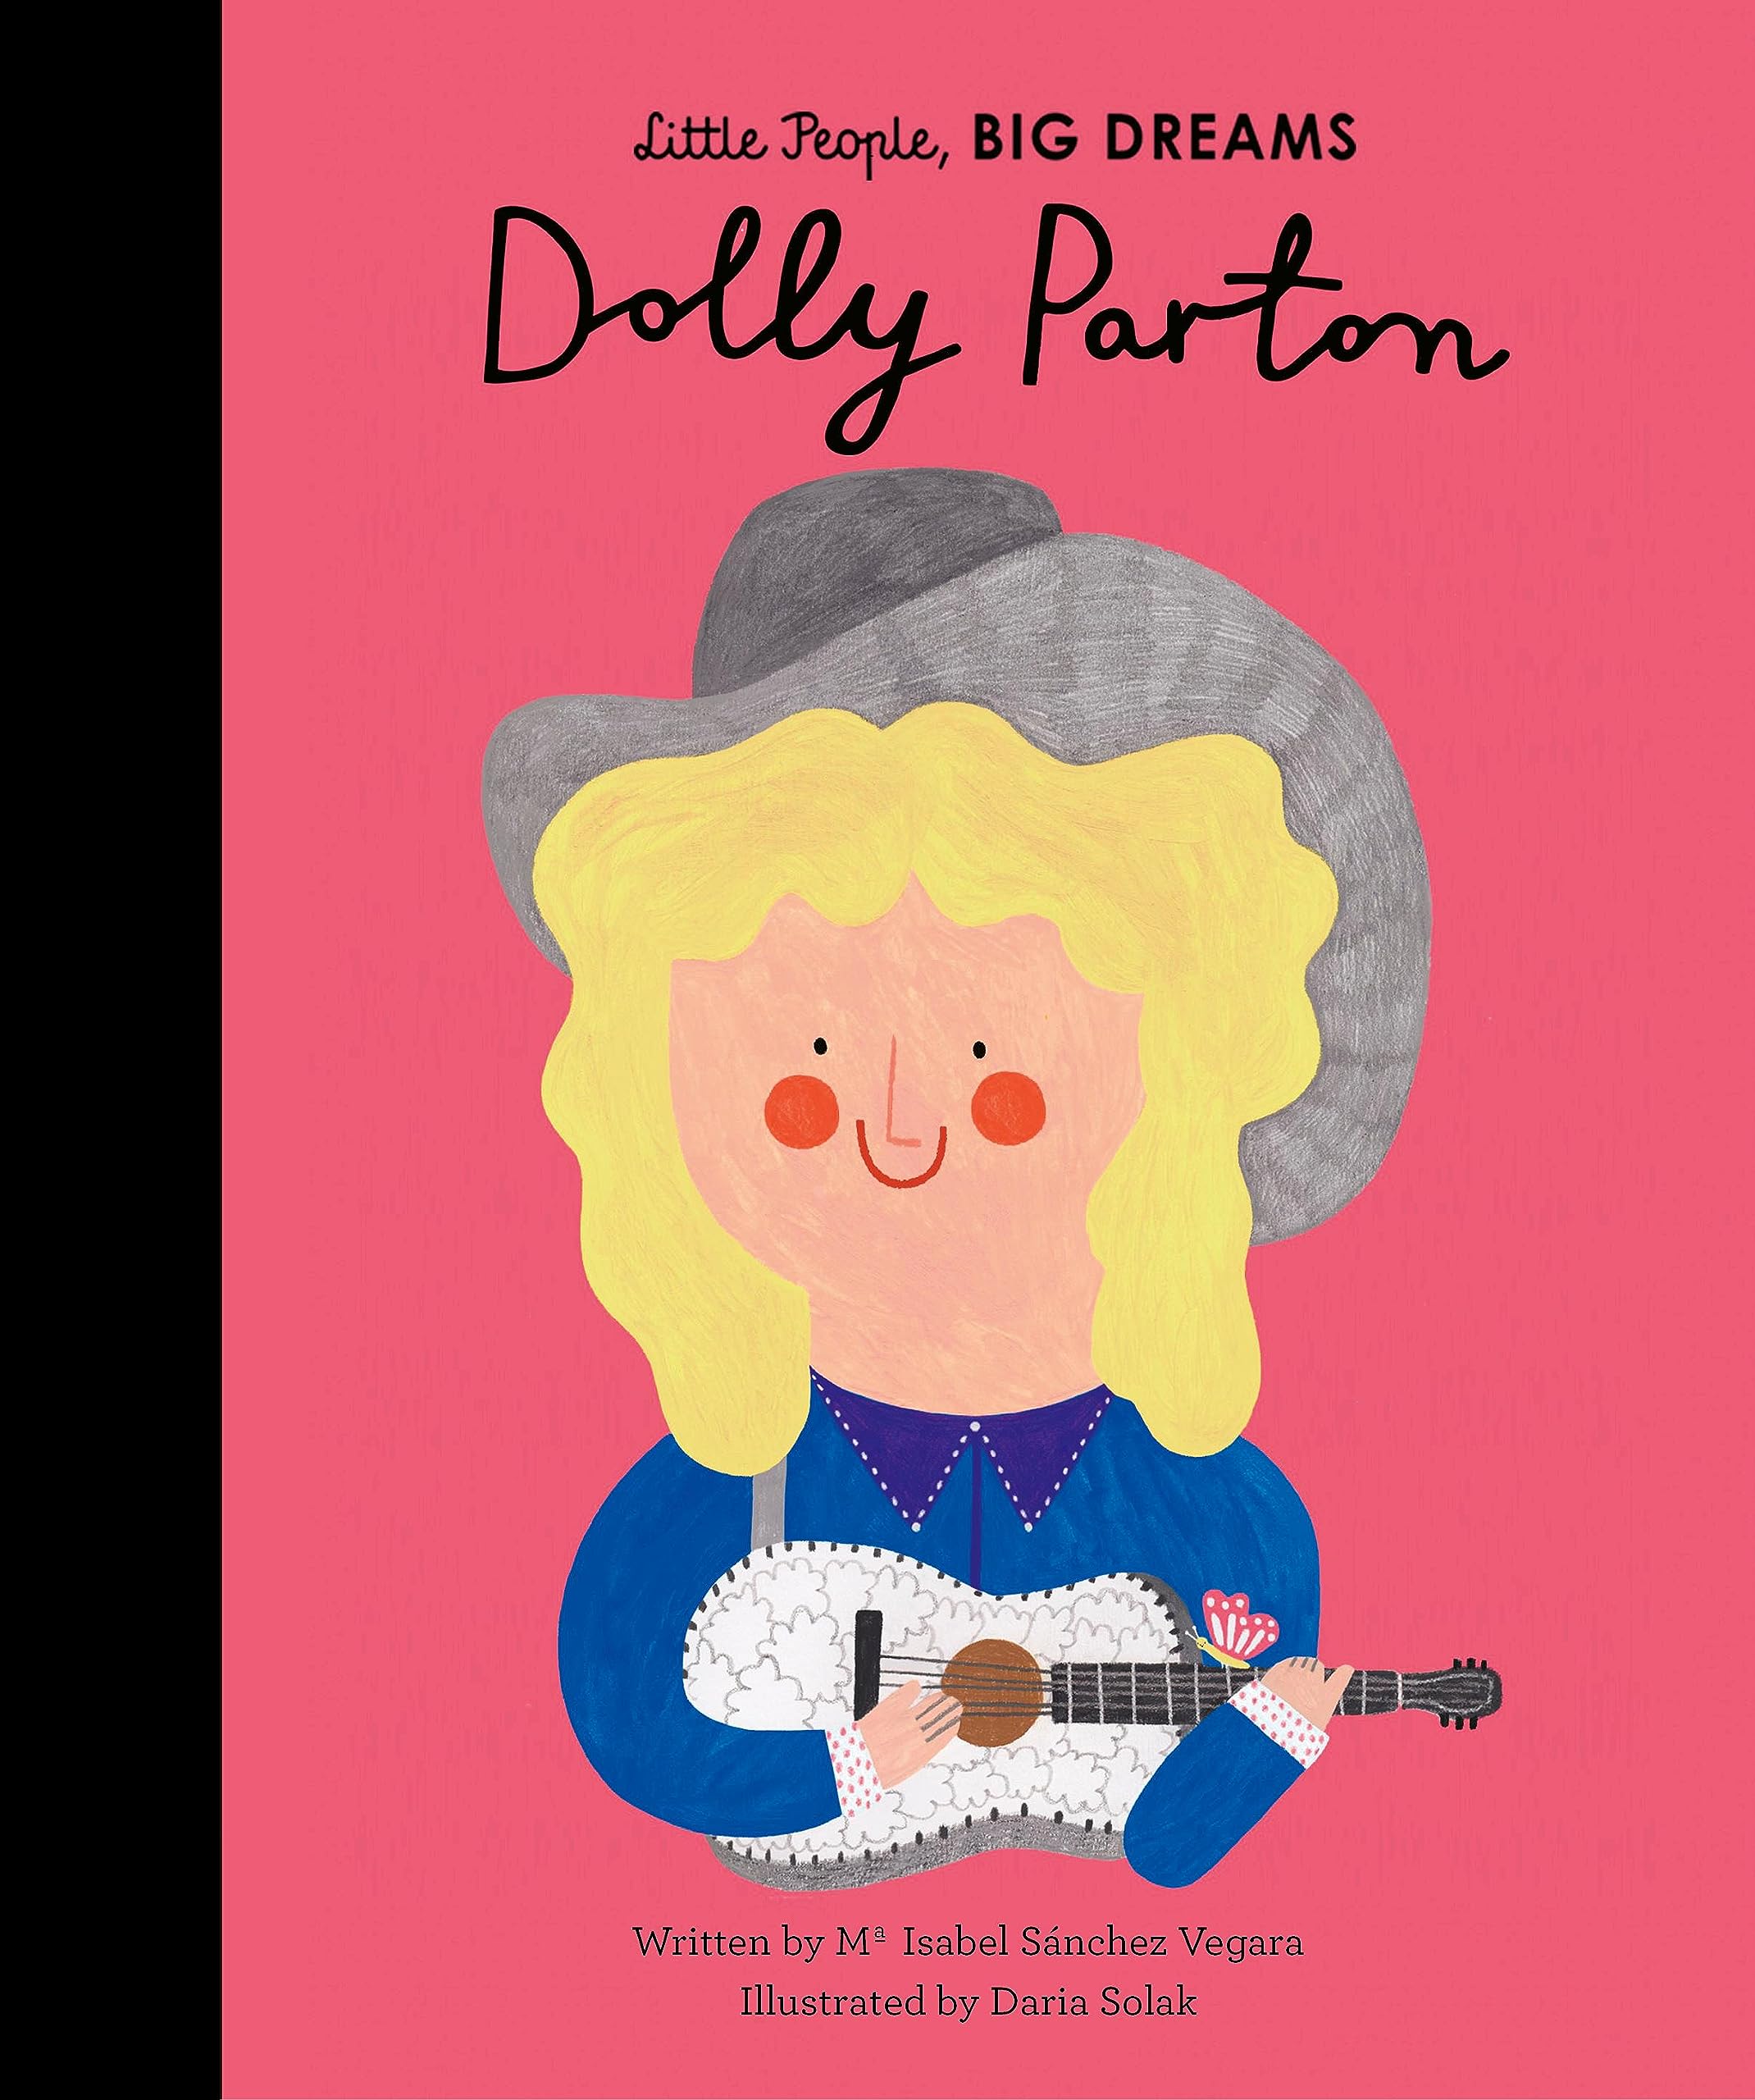 Little People, Big Dreams - Dolly Parton